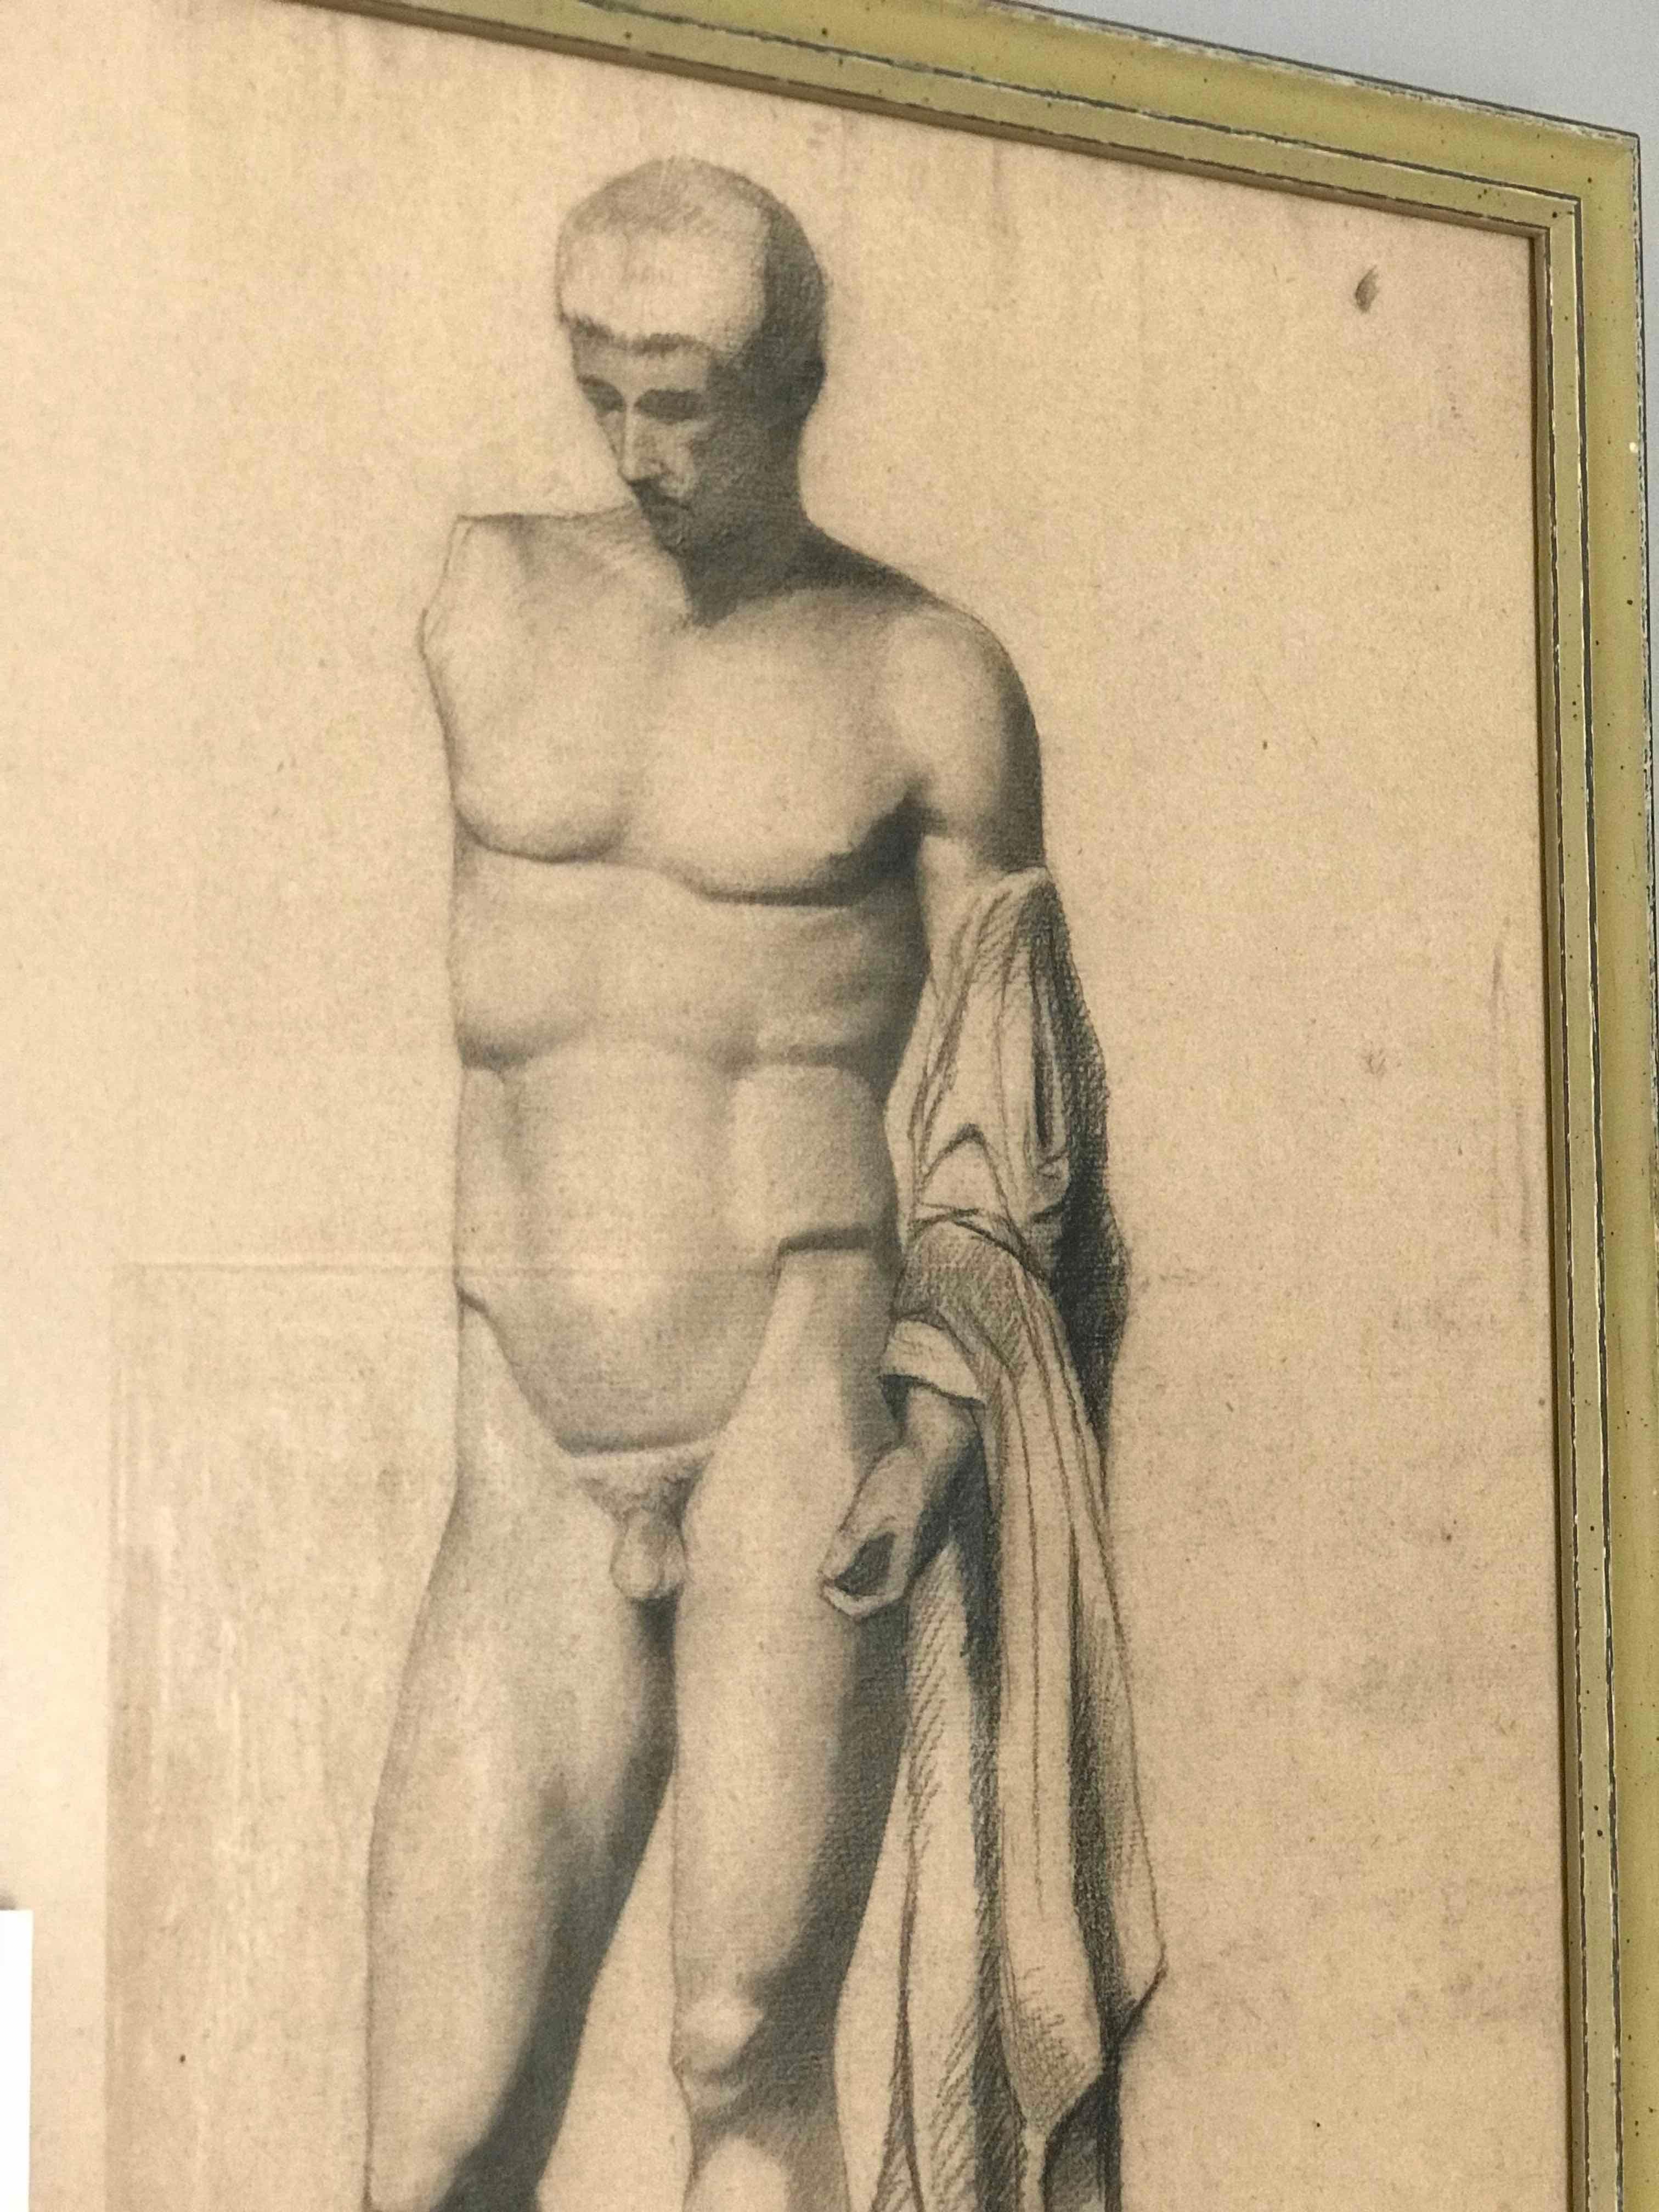 Paire de dessins au fusain néoclassiques de la fin du XIXe siècle représentant une sculpture masculine nue grecque ou romaine dans le style de l'Académie française. Un peu comme le célèbre David de Michel-Ange, la figure finement construite regarde